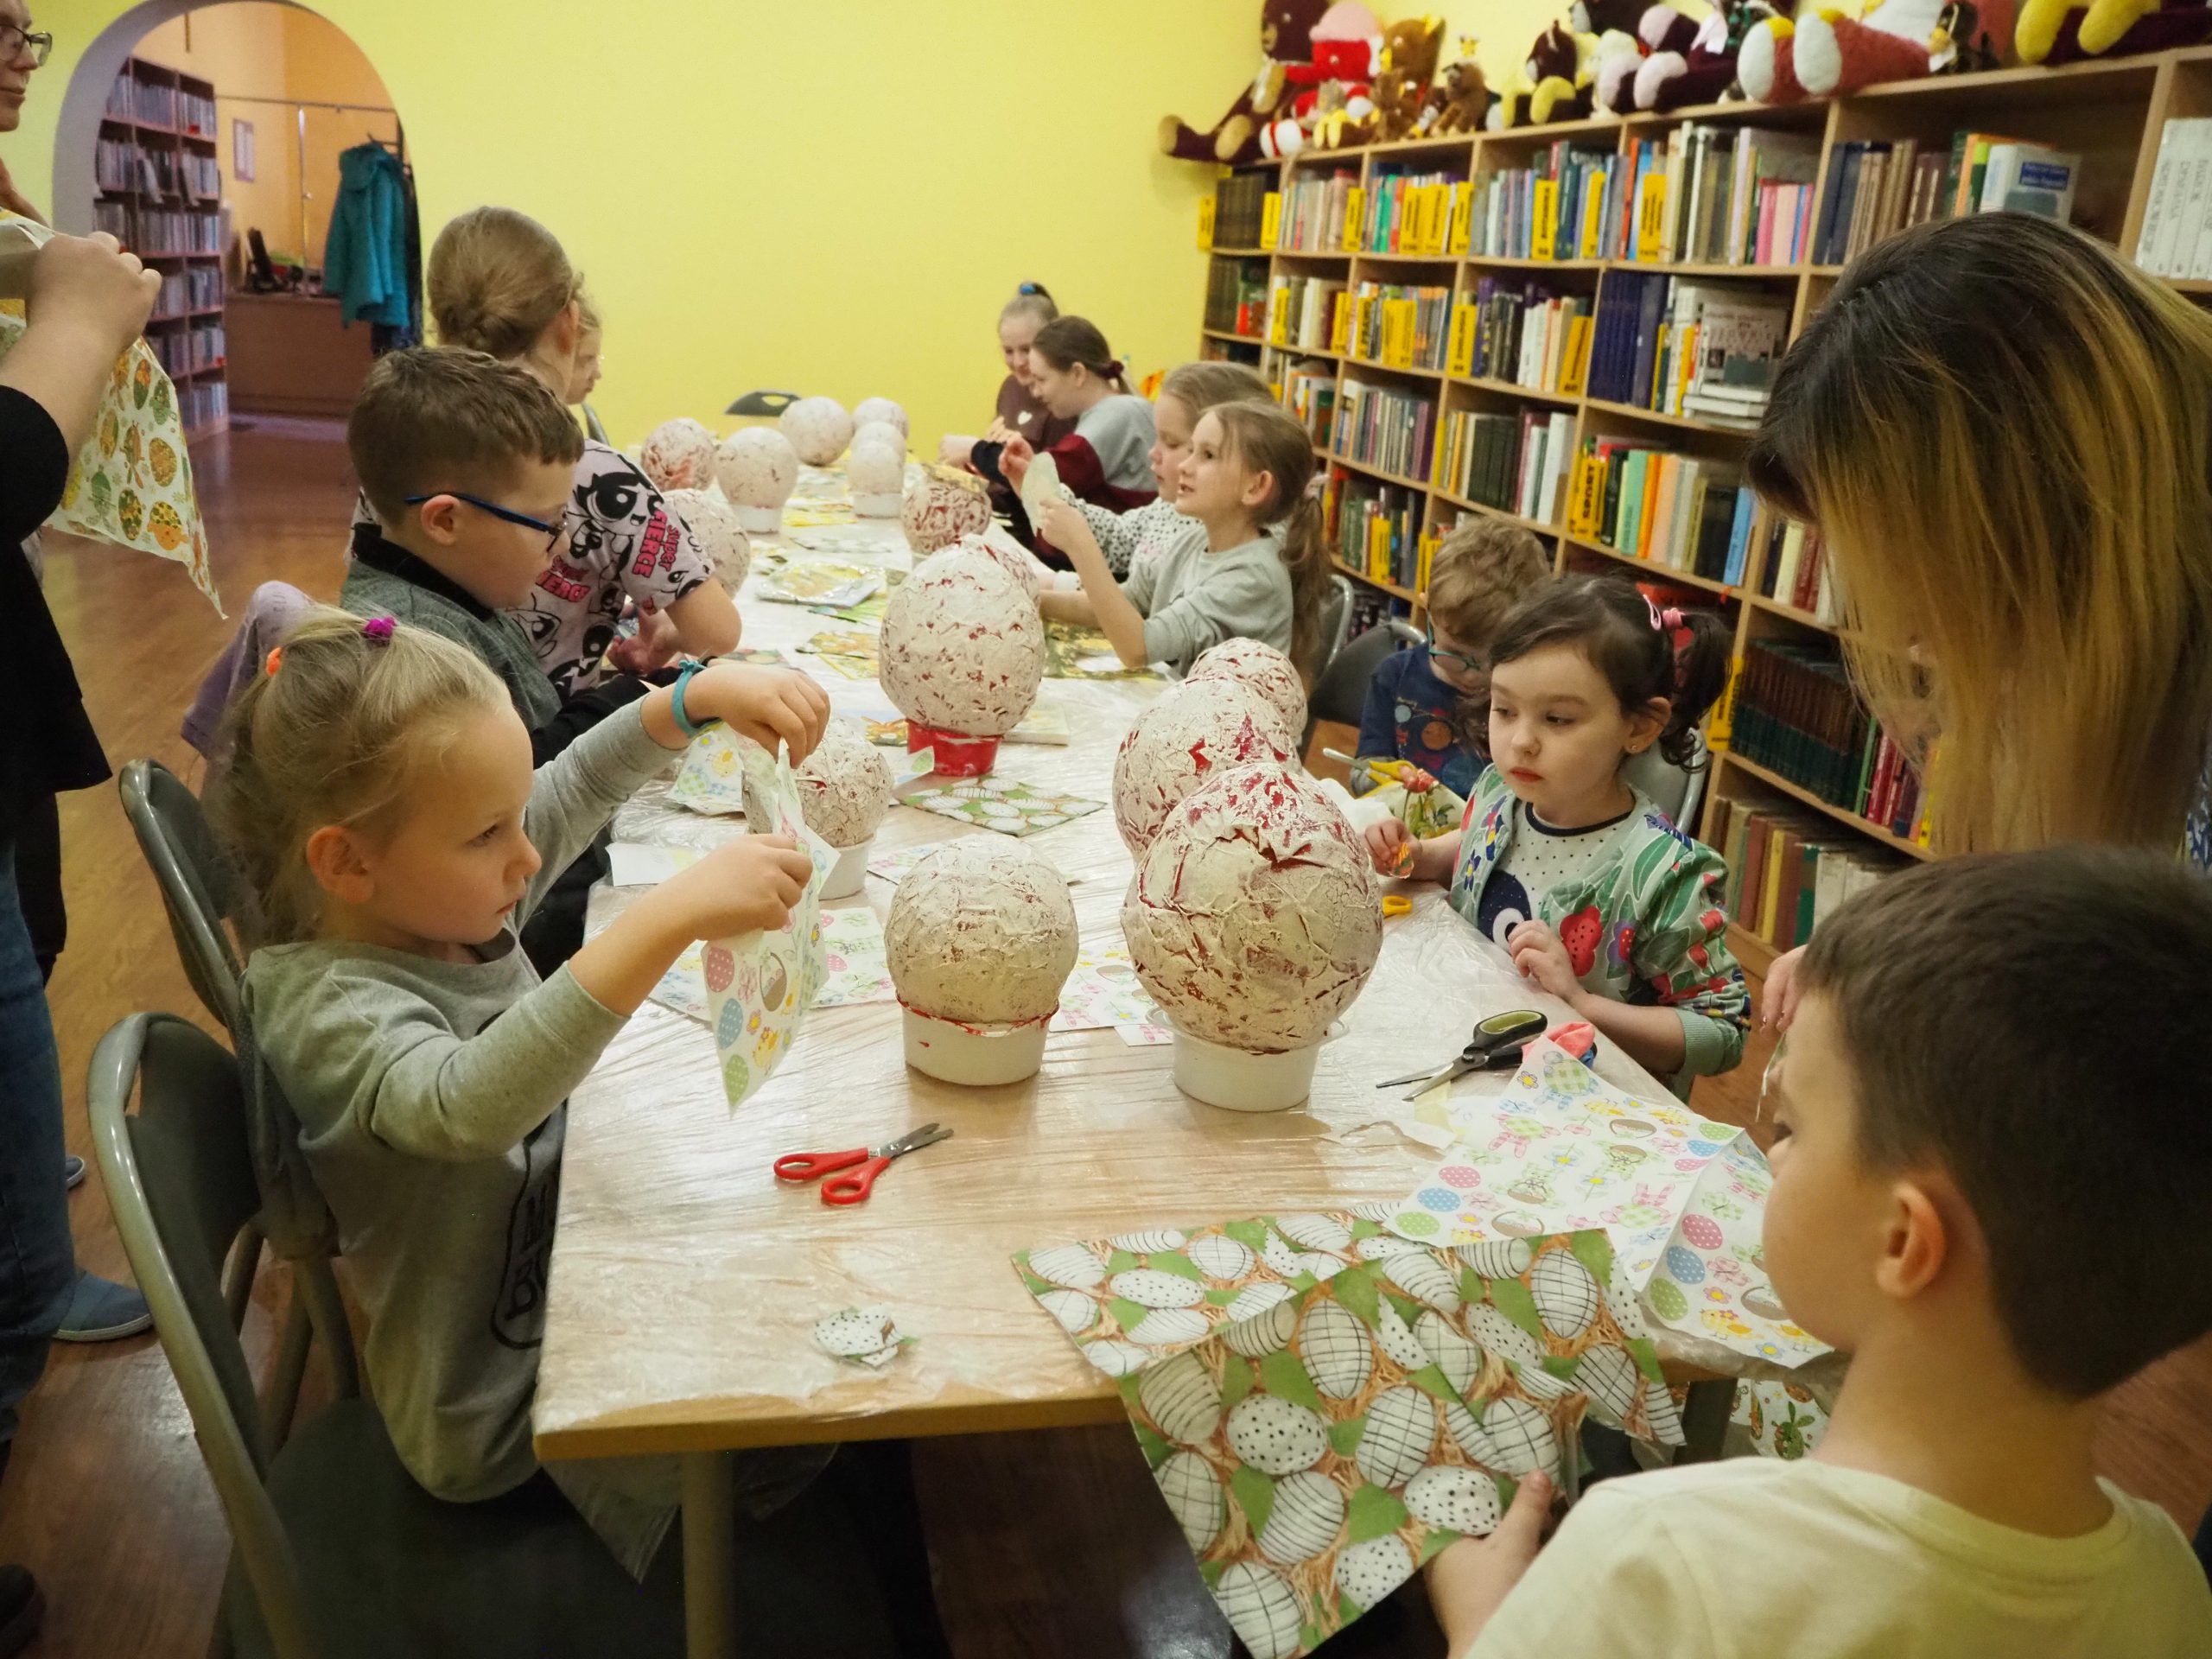 grupa dzieci przy stole wycina elementy z serwetek które później przykleją na papierowe jajka